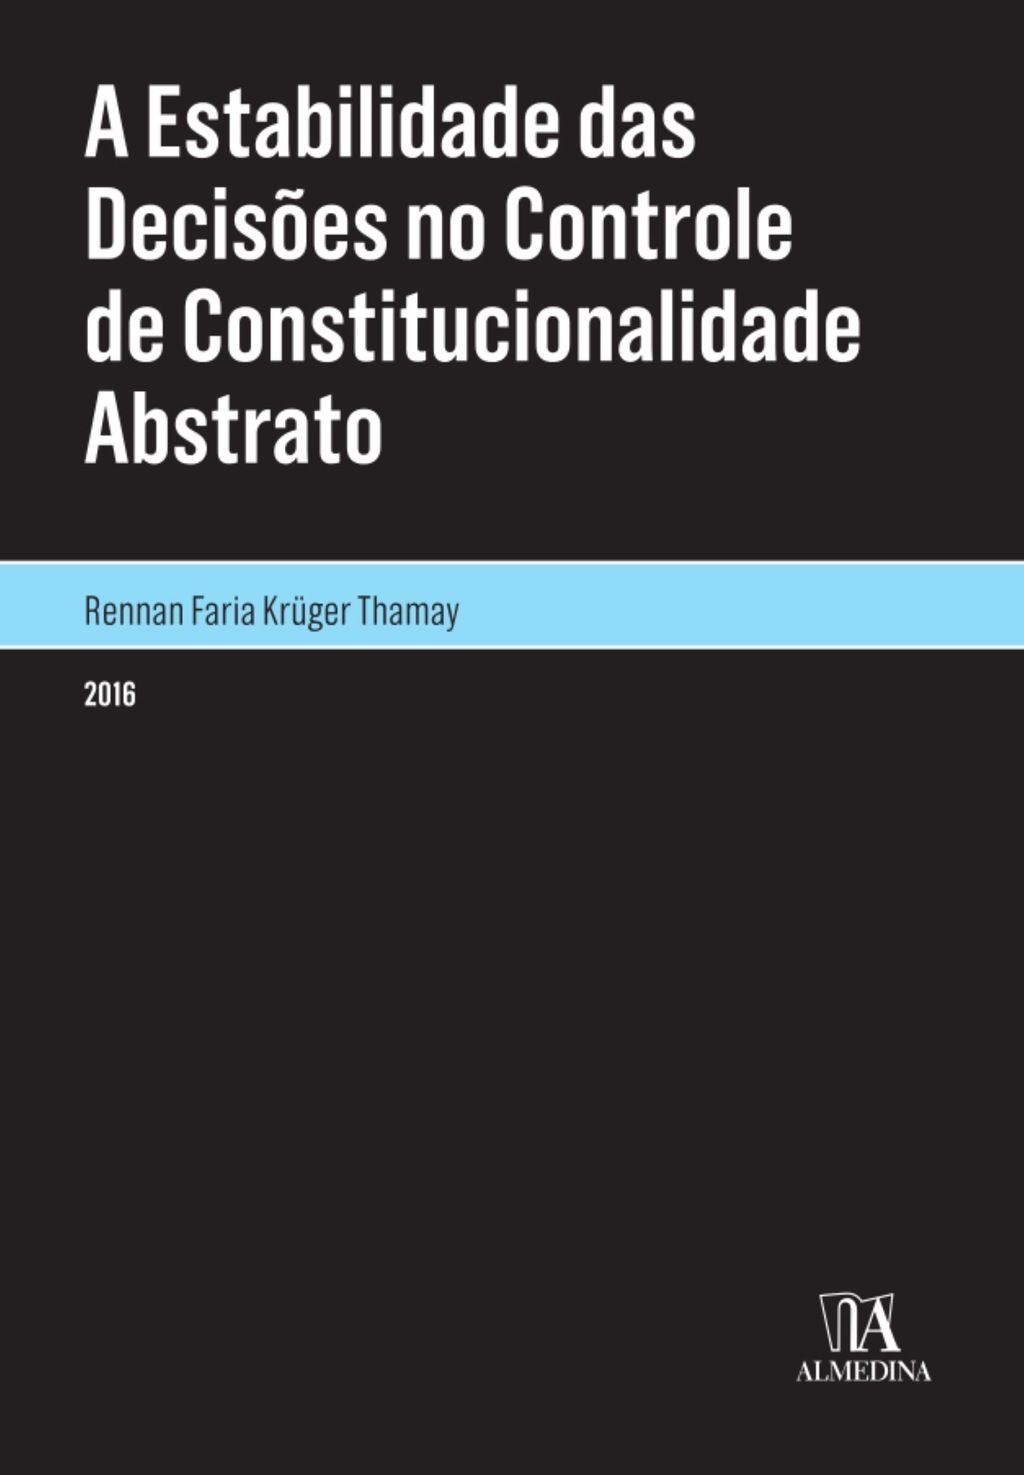 A Estabilidade das Decisões no Controle de Constitucionalidade Abstrato